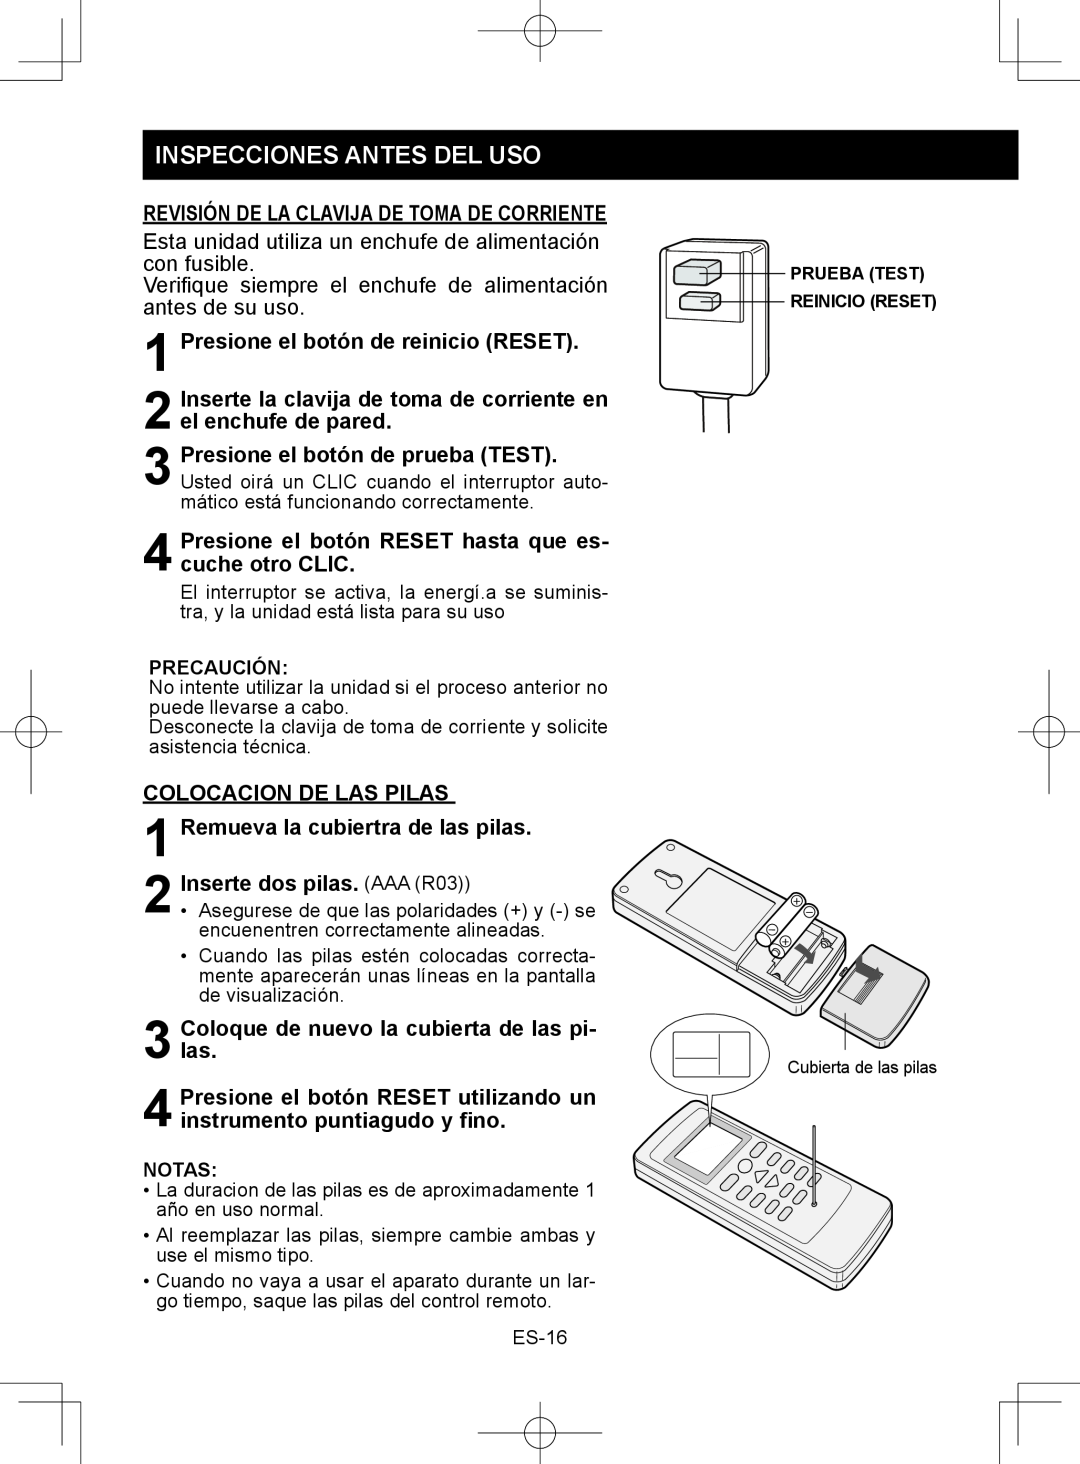 Sharp CV-2P10SC operation manual Inspecciones Antes Del Uso, Presione el botón de reinicio RESET, Colocacion De Las Pilas 